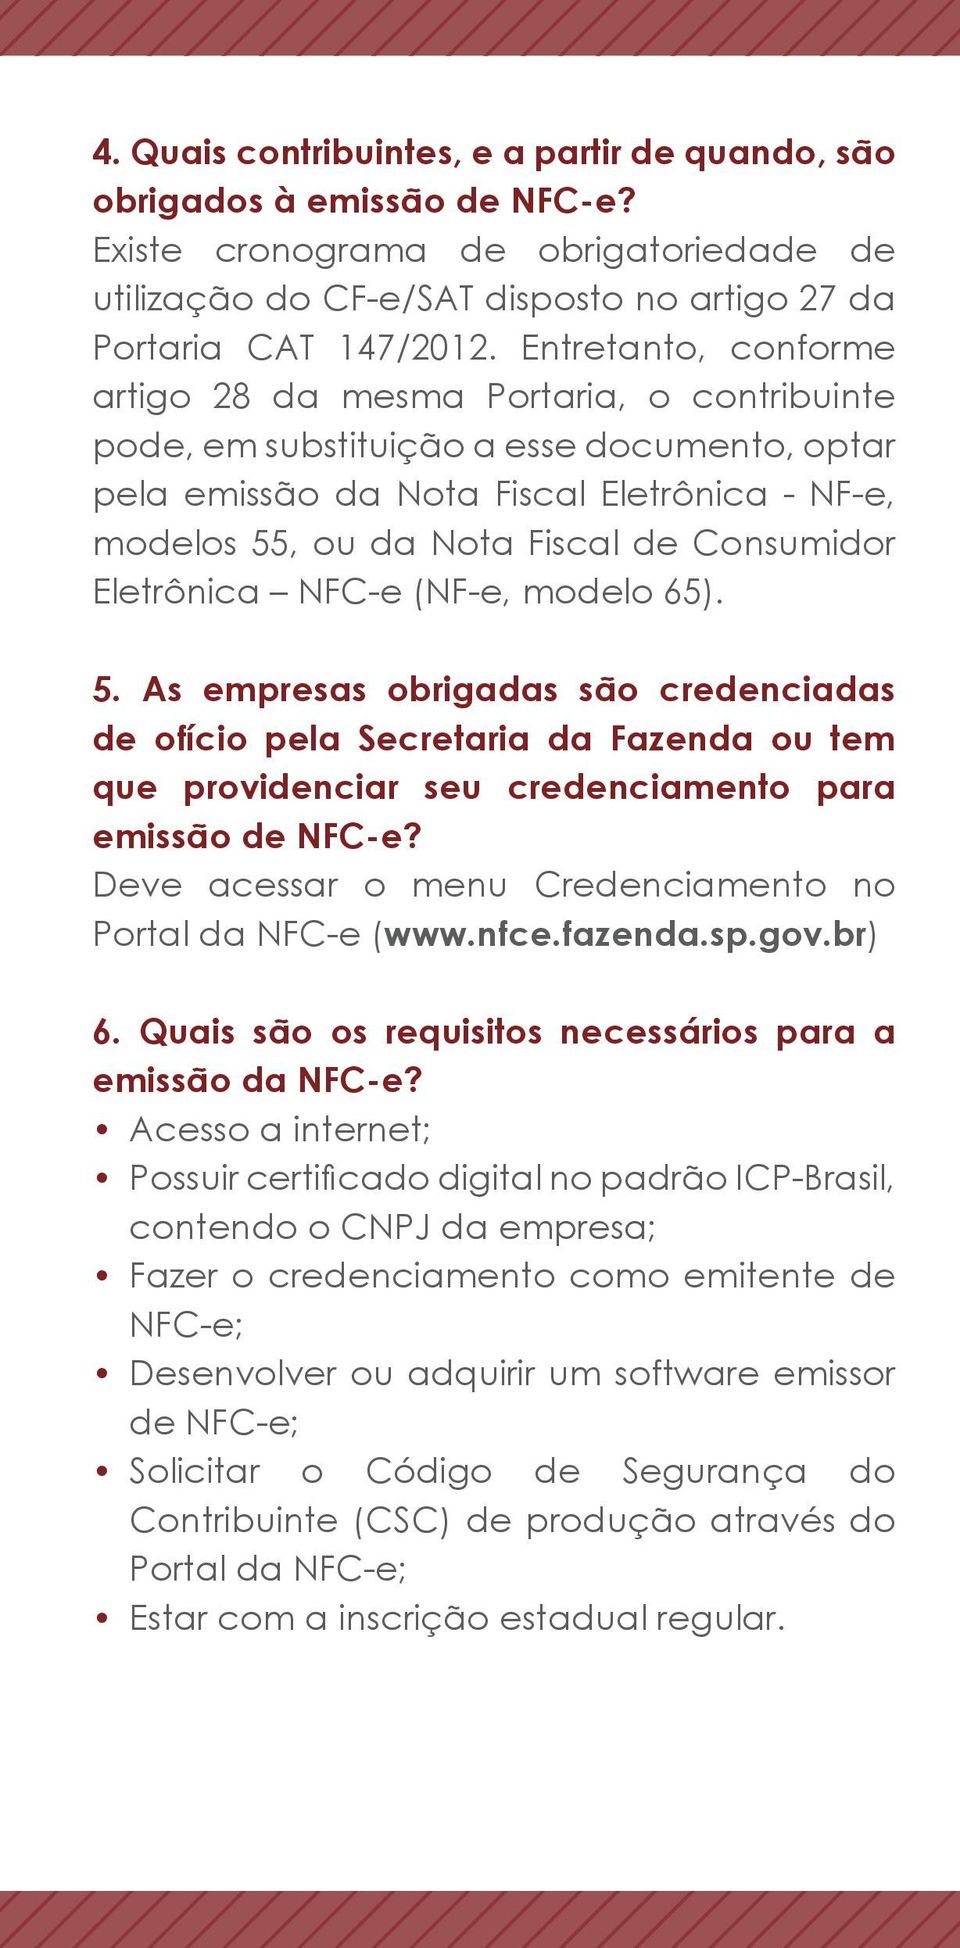 Consumidor Eletrônica NFC-e (NF-e, modelo 65). 5. As empresas obrigadas são credenciadas de ofício pela Secretaria da Fazenda ou tem que providenciar seu credenciamento para emissão de NFC-e?